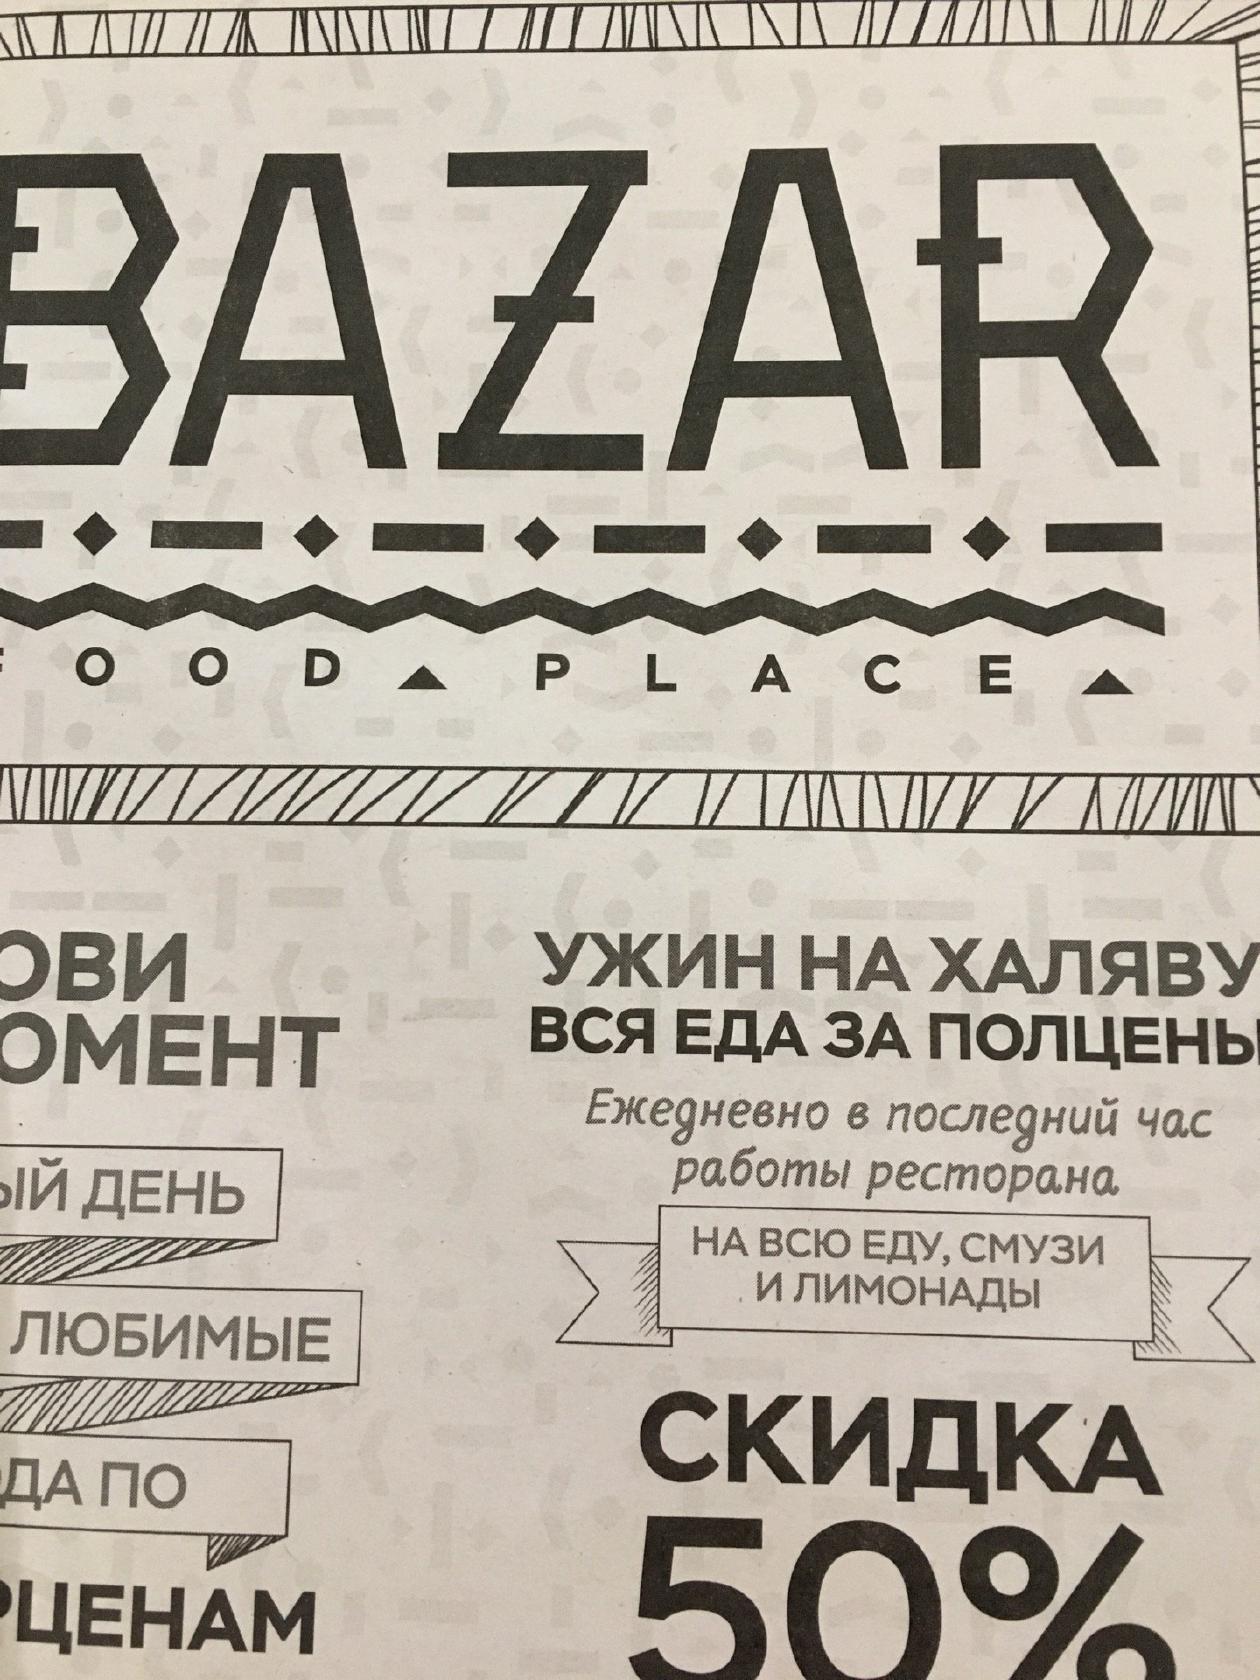 Ресторан "BAZAR" ул. Комсомольская